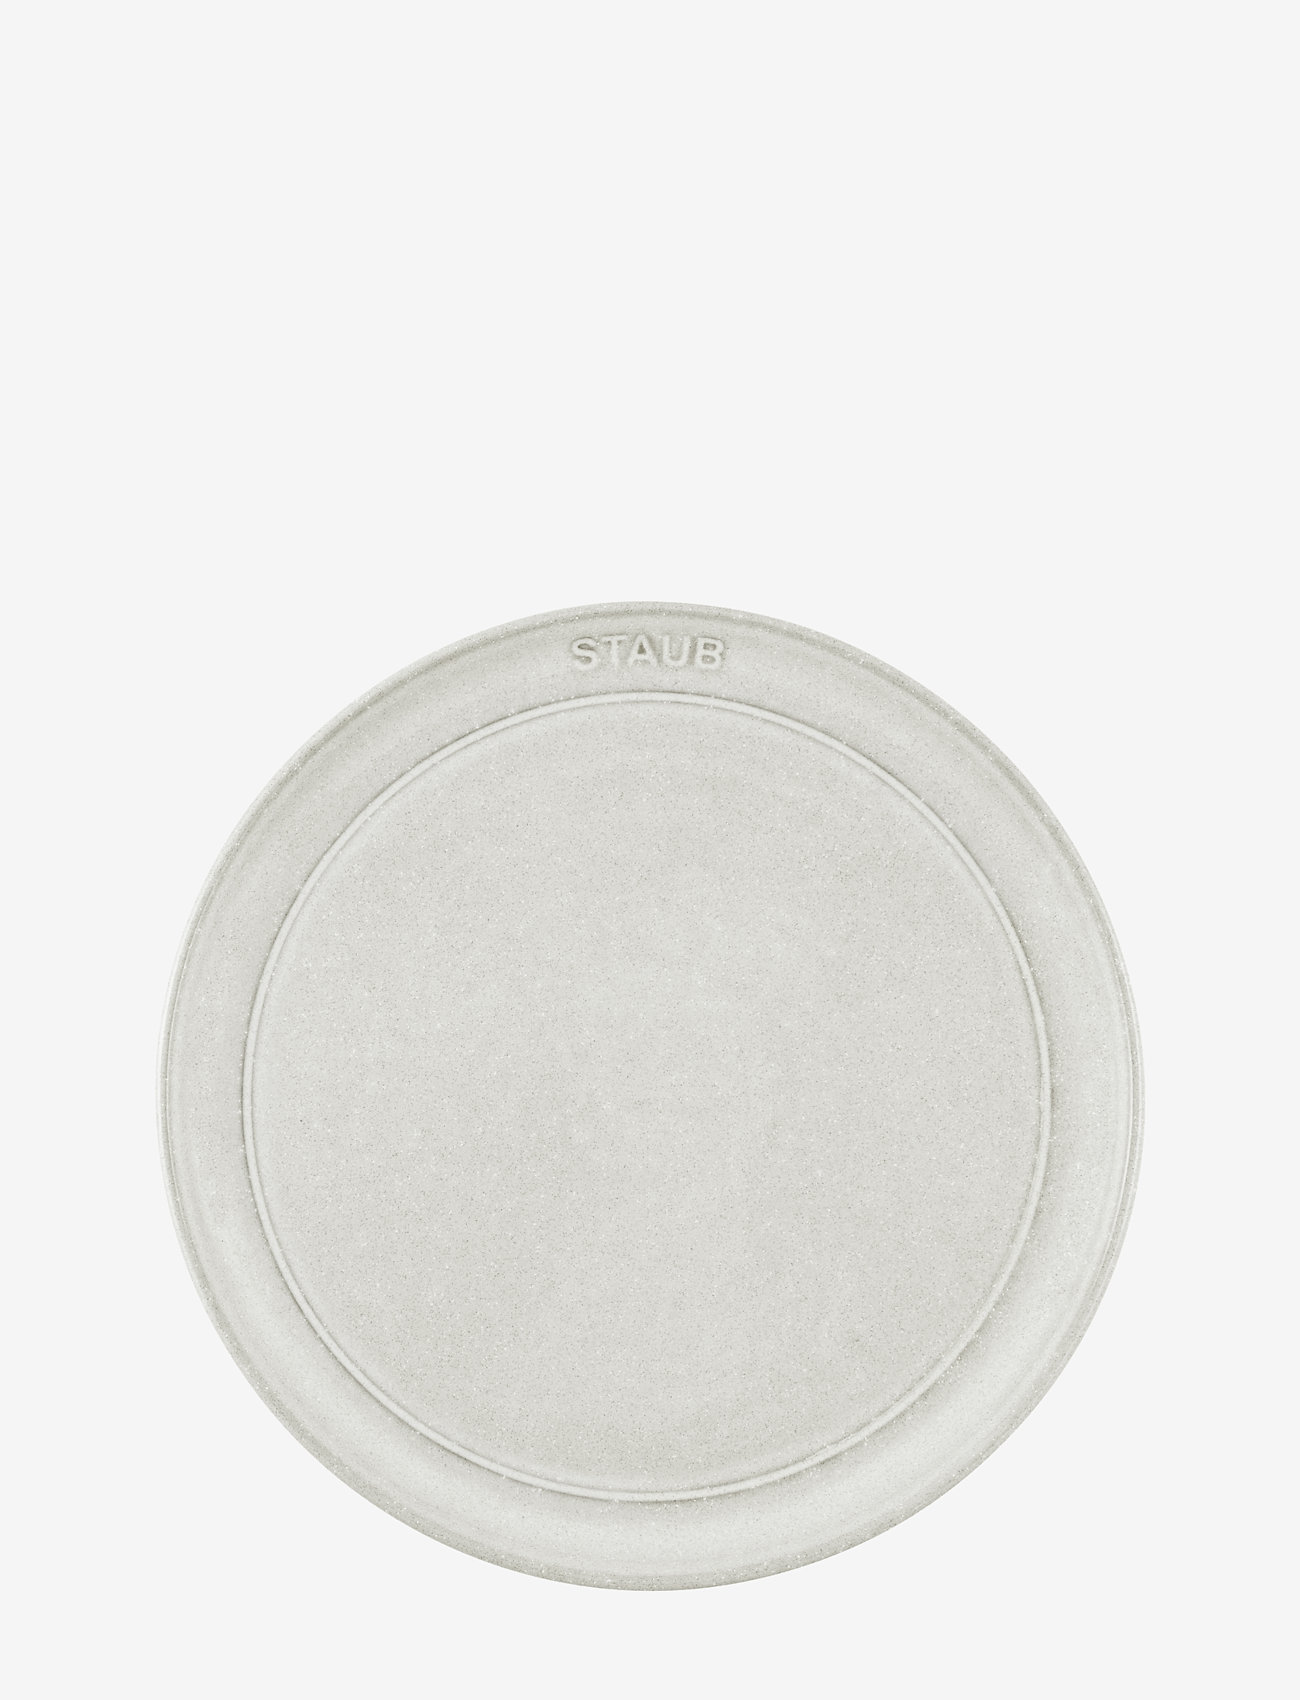 STAUB - Staub, Plate flat 22 cm, white truffle - lowest prices - grey - 1